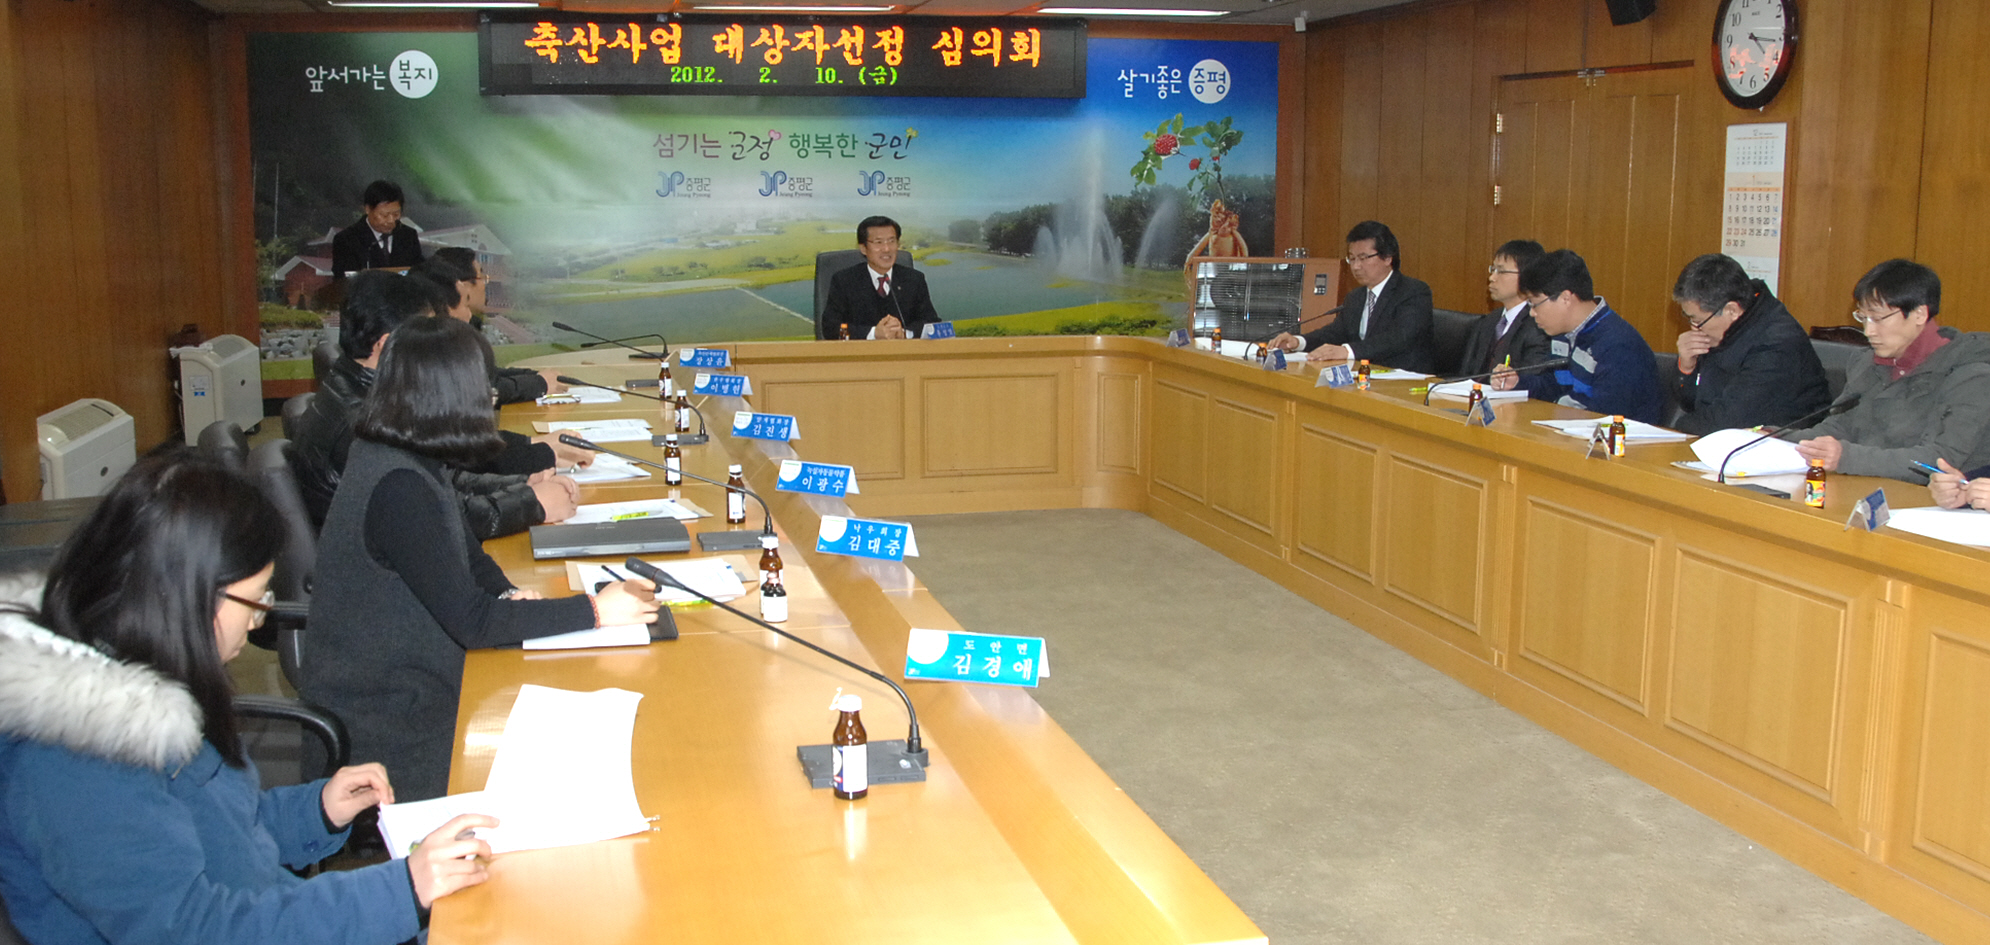 2012년 주요 축산사업 대상자 선정 및 가축방역 약품선정 협의회 참석